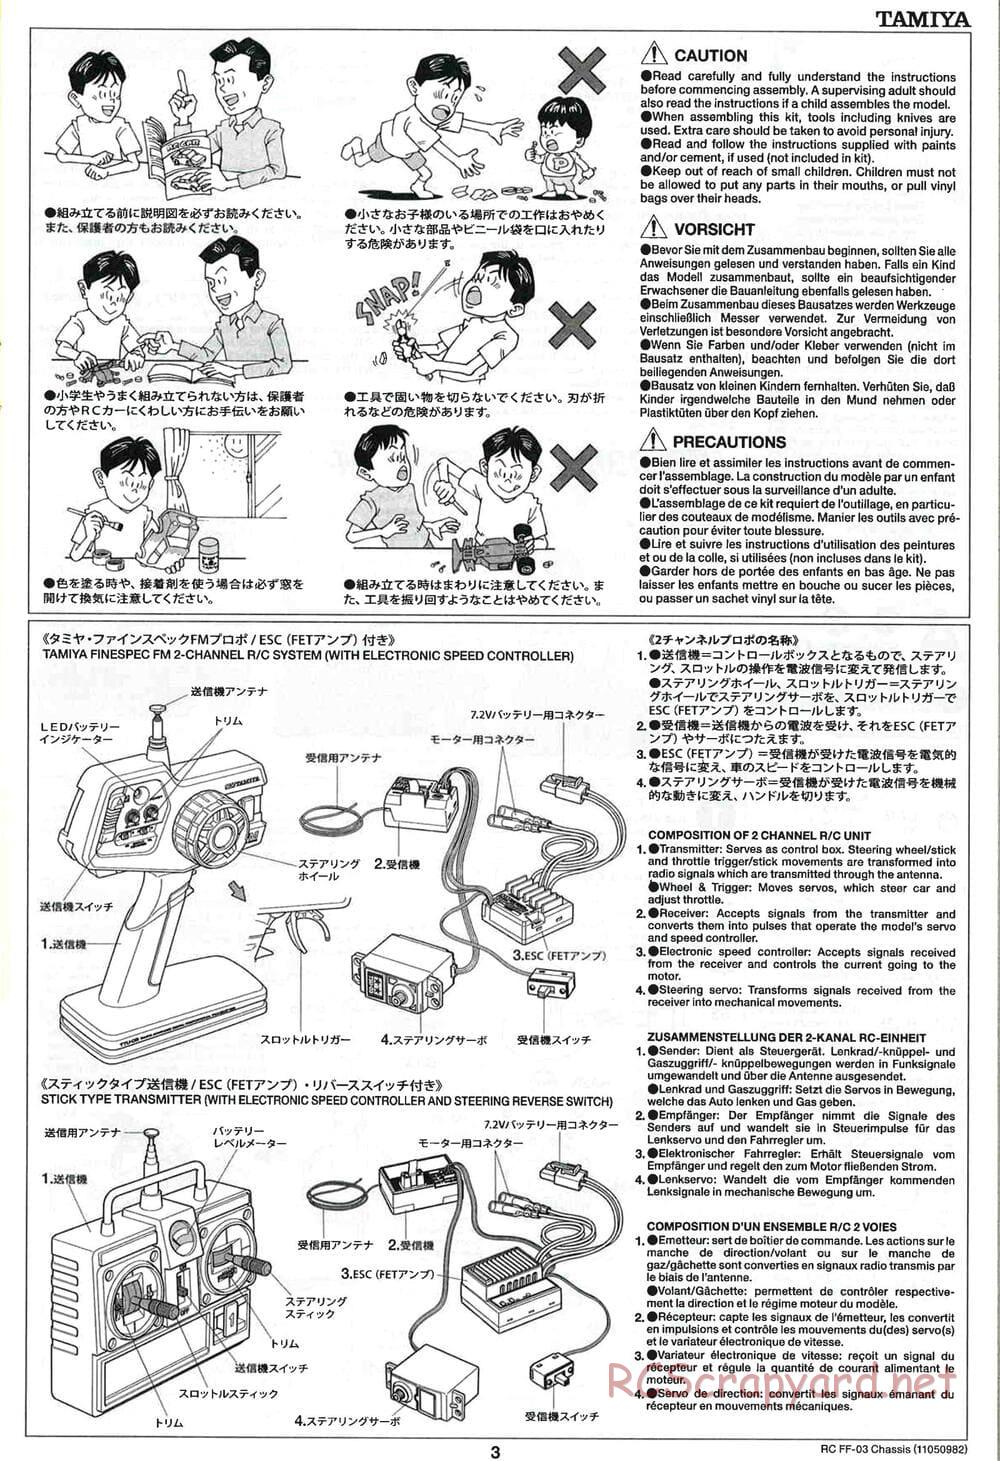 Tamiya - Honda CR-Z - FF-03 Chassis - Manual - Page 3